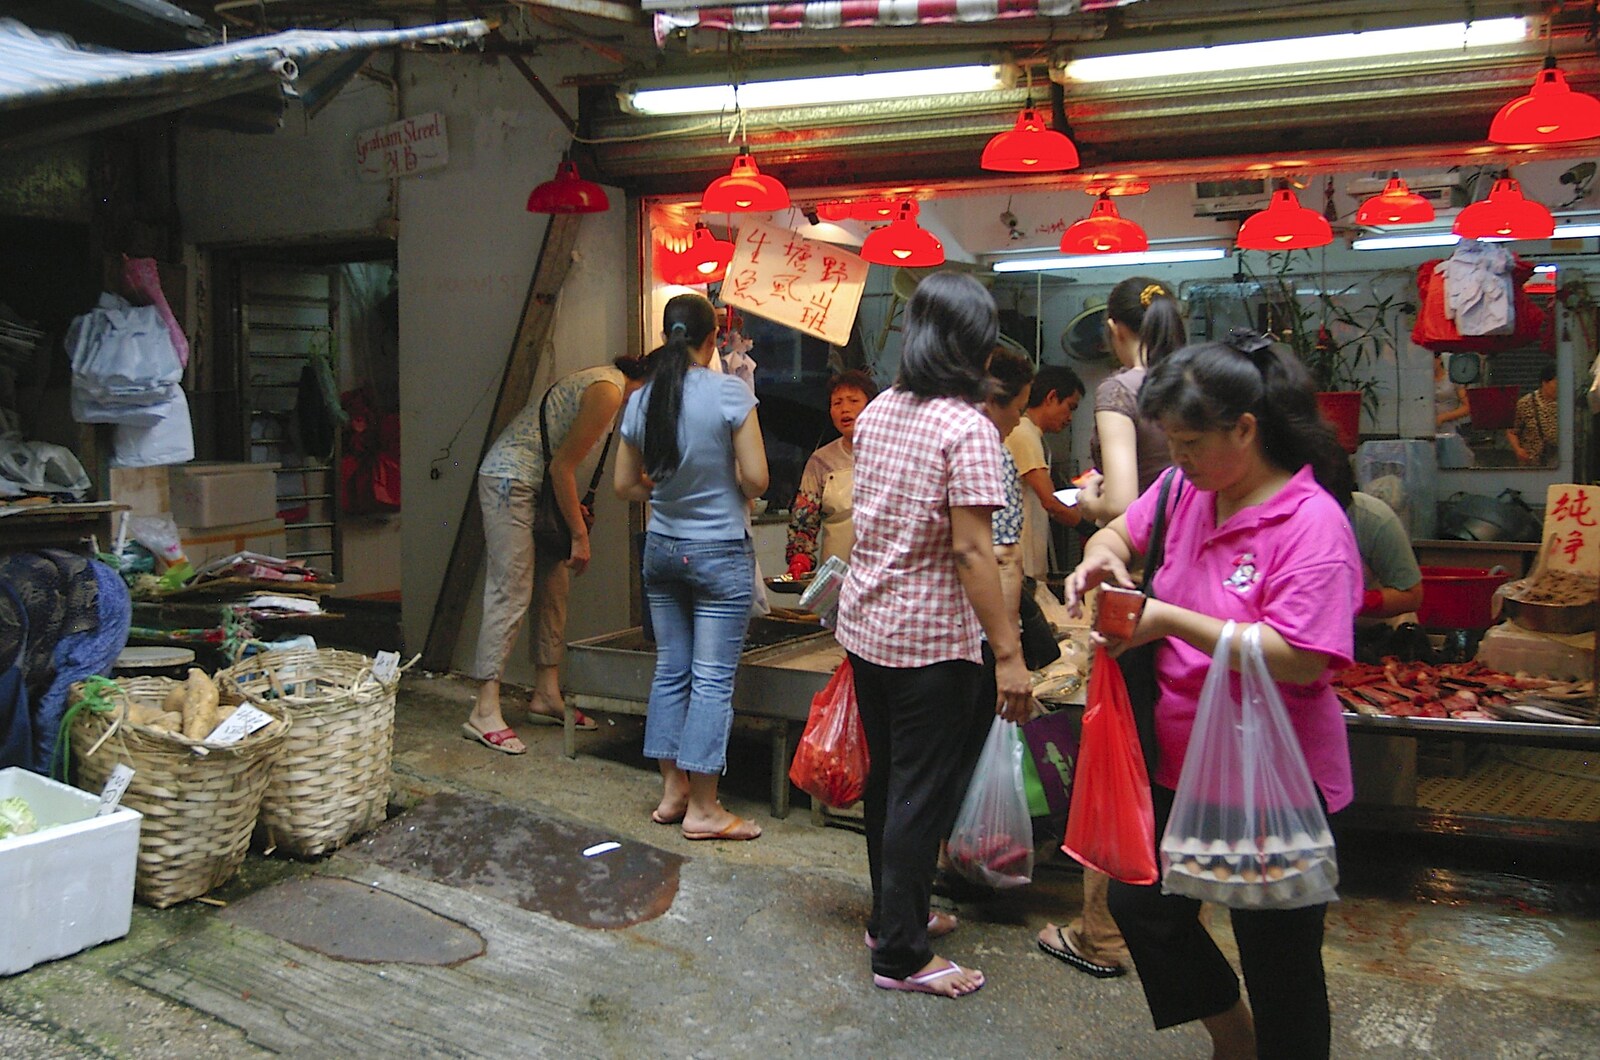 More market mysteries from Lan Kwai Fong Market, Hong Kong, China - 4th October 2006